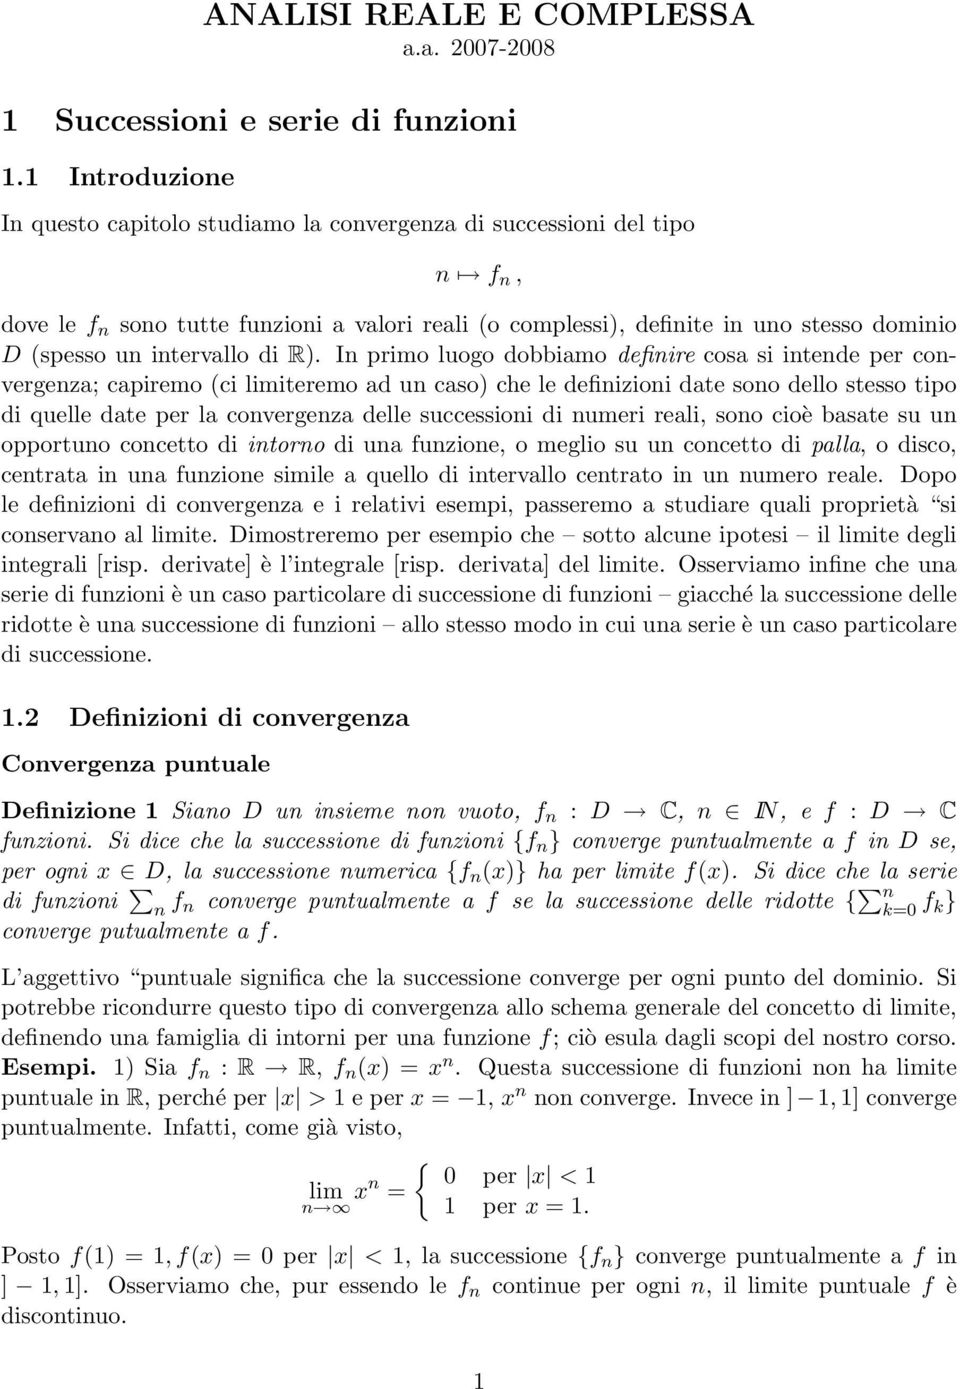 R). In primo luogo dobbimo definire cos si intende per convergenz; cpiremo (ci limiteremo d un cso) che le definizioni dte sono dello stesso tipo di quelle dte per l convergenz delle successioni di